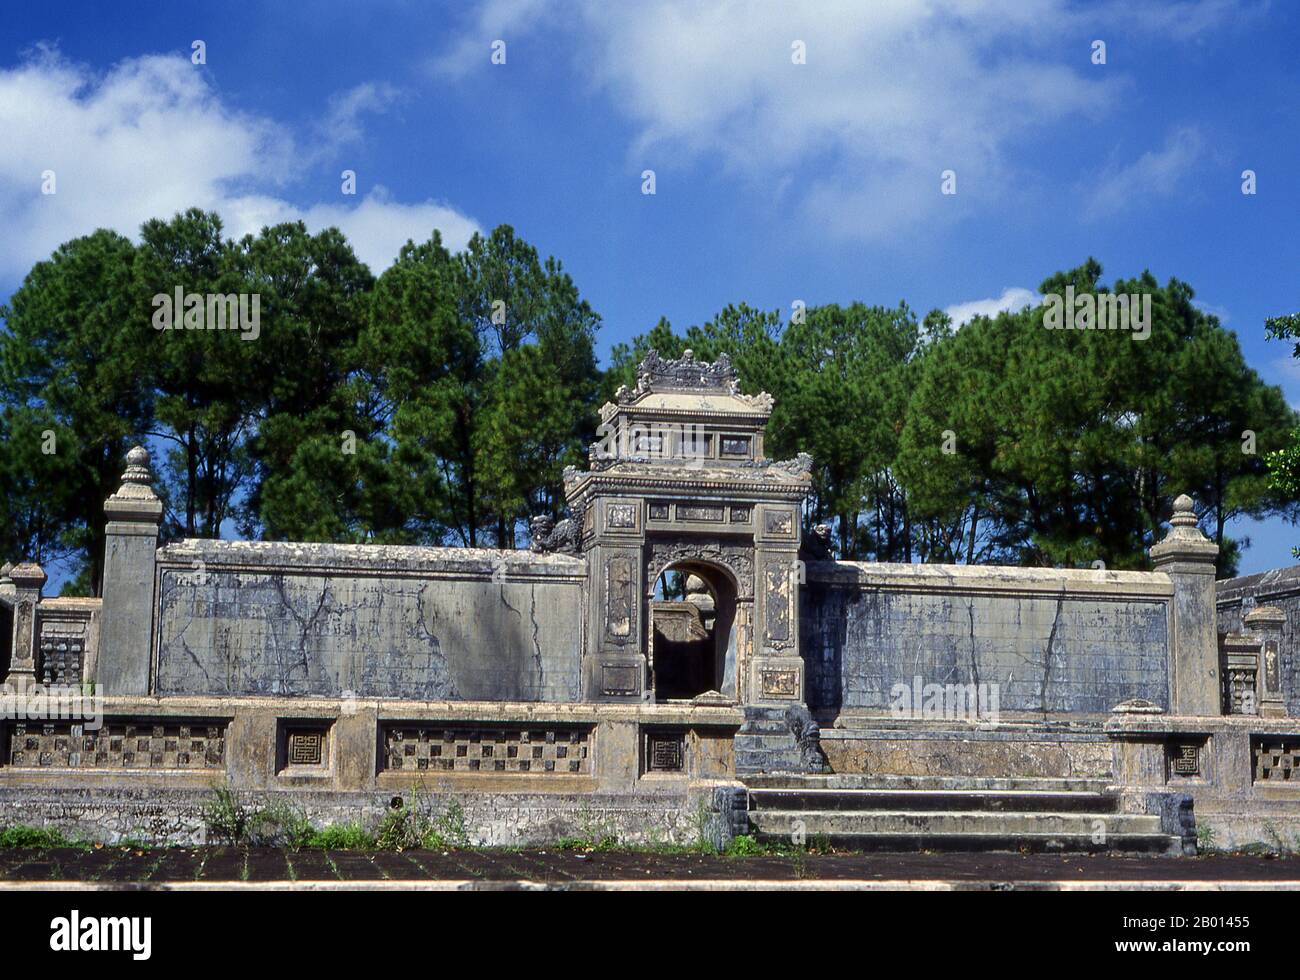 Vietnam: Tombe de l'empereur Dong Khanh, Hue. L'empereur Đồng Khánh (également connu sous le nom de Nguyễn Phúc Ưng Kỷ; 19 février 1864 - 28 janvier 1889) était le 9e empereur de la dynastie Nguyễn du Vietnam. Il régna pendant 3 ans entre 1885 et 1889, et fut considéré comme l'un des empereurs les plus méprisés de son époque. Hue fut la capitale impériale de la dynastie Nguyen entre 1802 et 1945. Les tombes de plusieurs empereurs se trouvent dans et autour de la ville et le long de la rivière des parfums. Hue est un site classé au patrimoine mondial de l'UNESCO. Banque D'Images